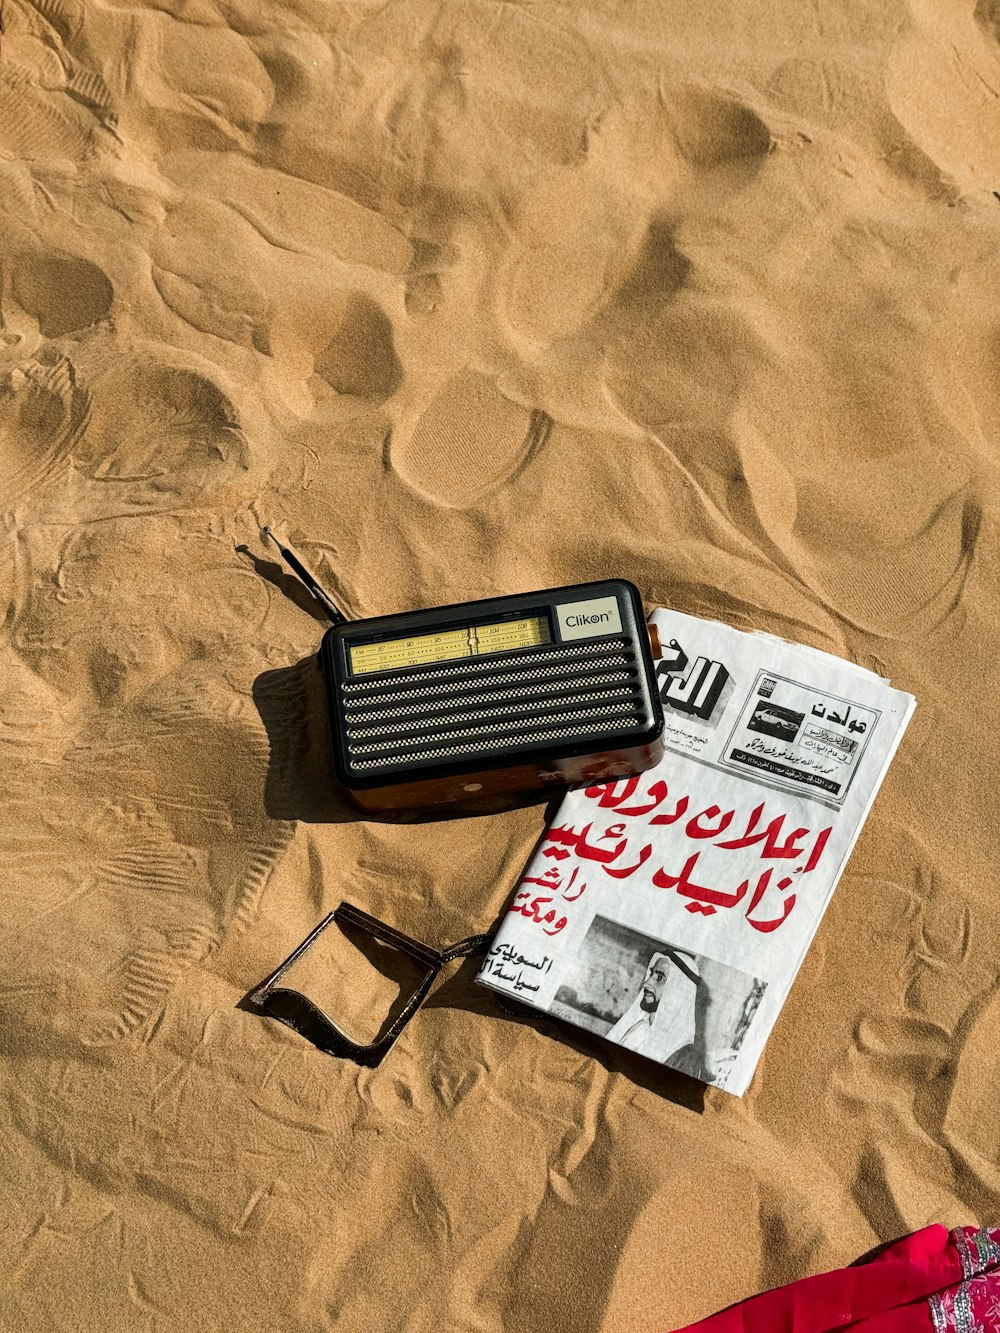 une radio et une paire de lunettes de soleil posées dans le sable